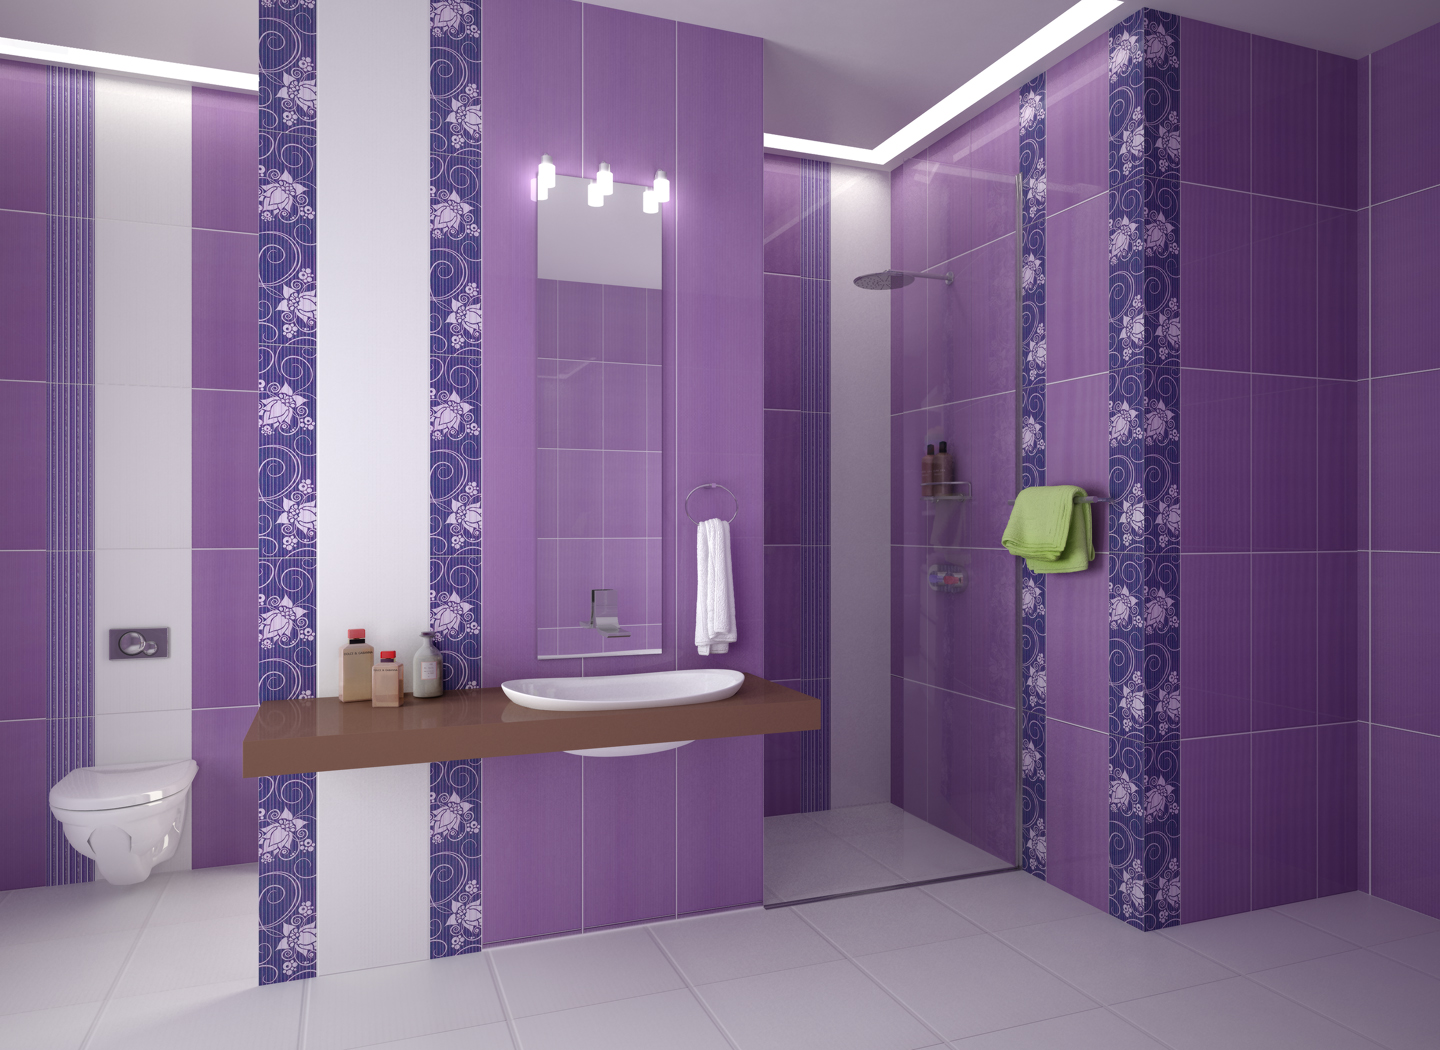 Juga bekerja pada perluasan batas tampilan ubin ruang diagonal di kamar mandi